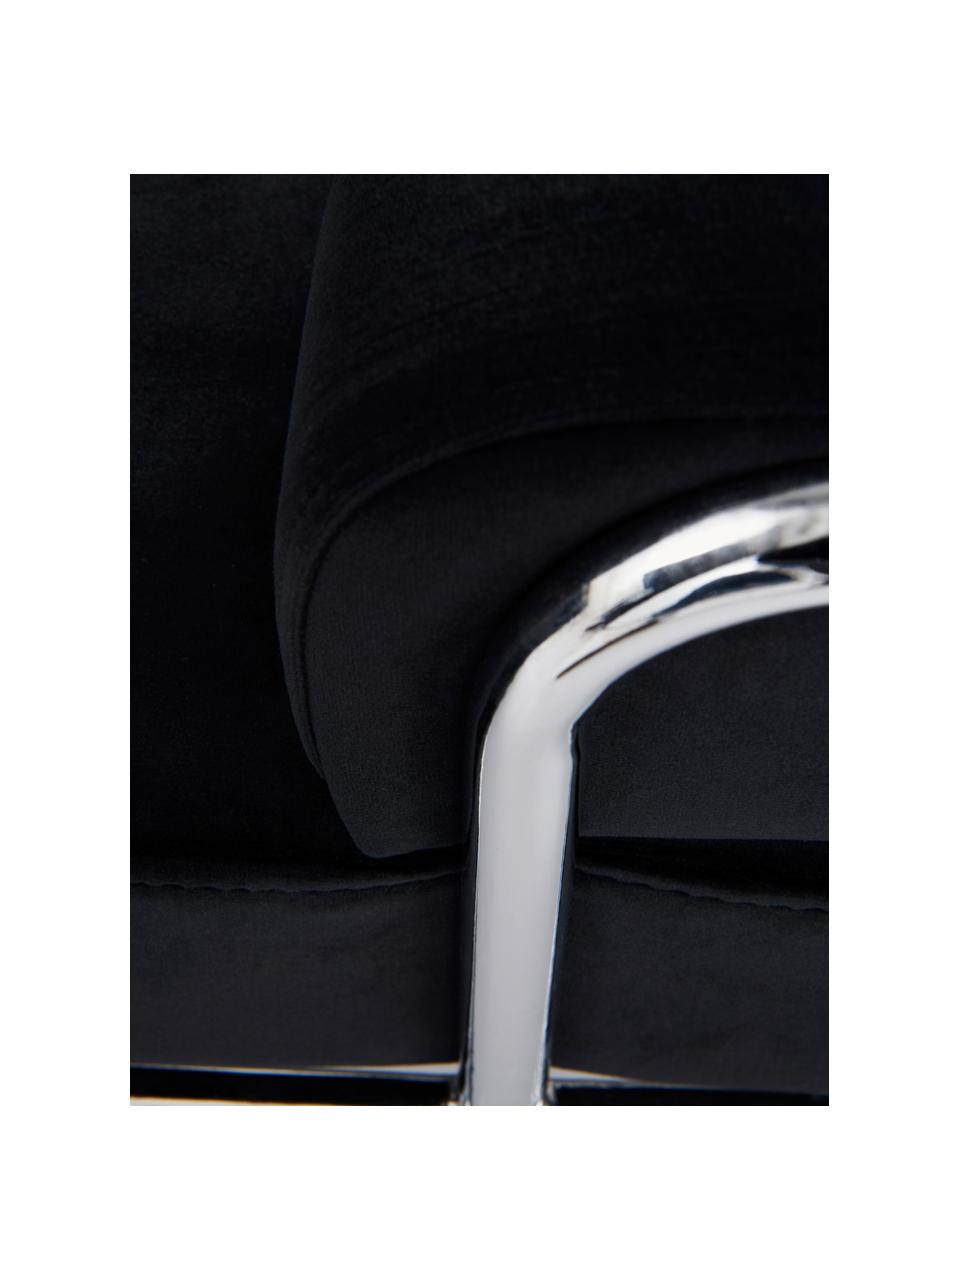 Fluwelen huisdierbed Fldo, Bekleding: fluweel (100% polyester), Frame: verchroomd metaal, Zwart, zilverkleurig, B 83 x D 52 cm